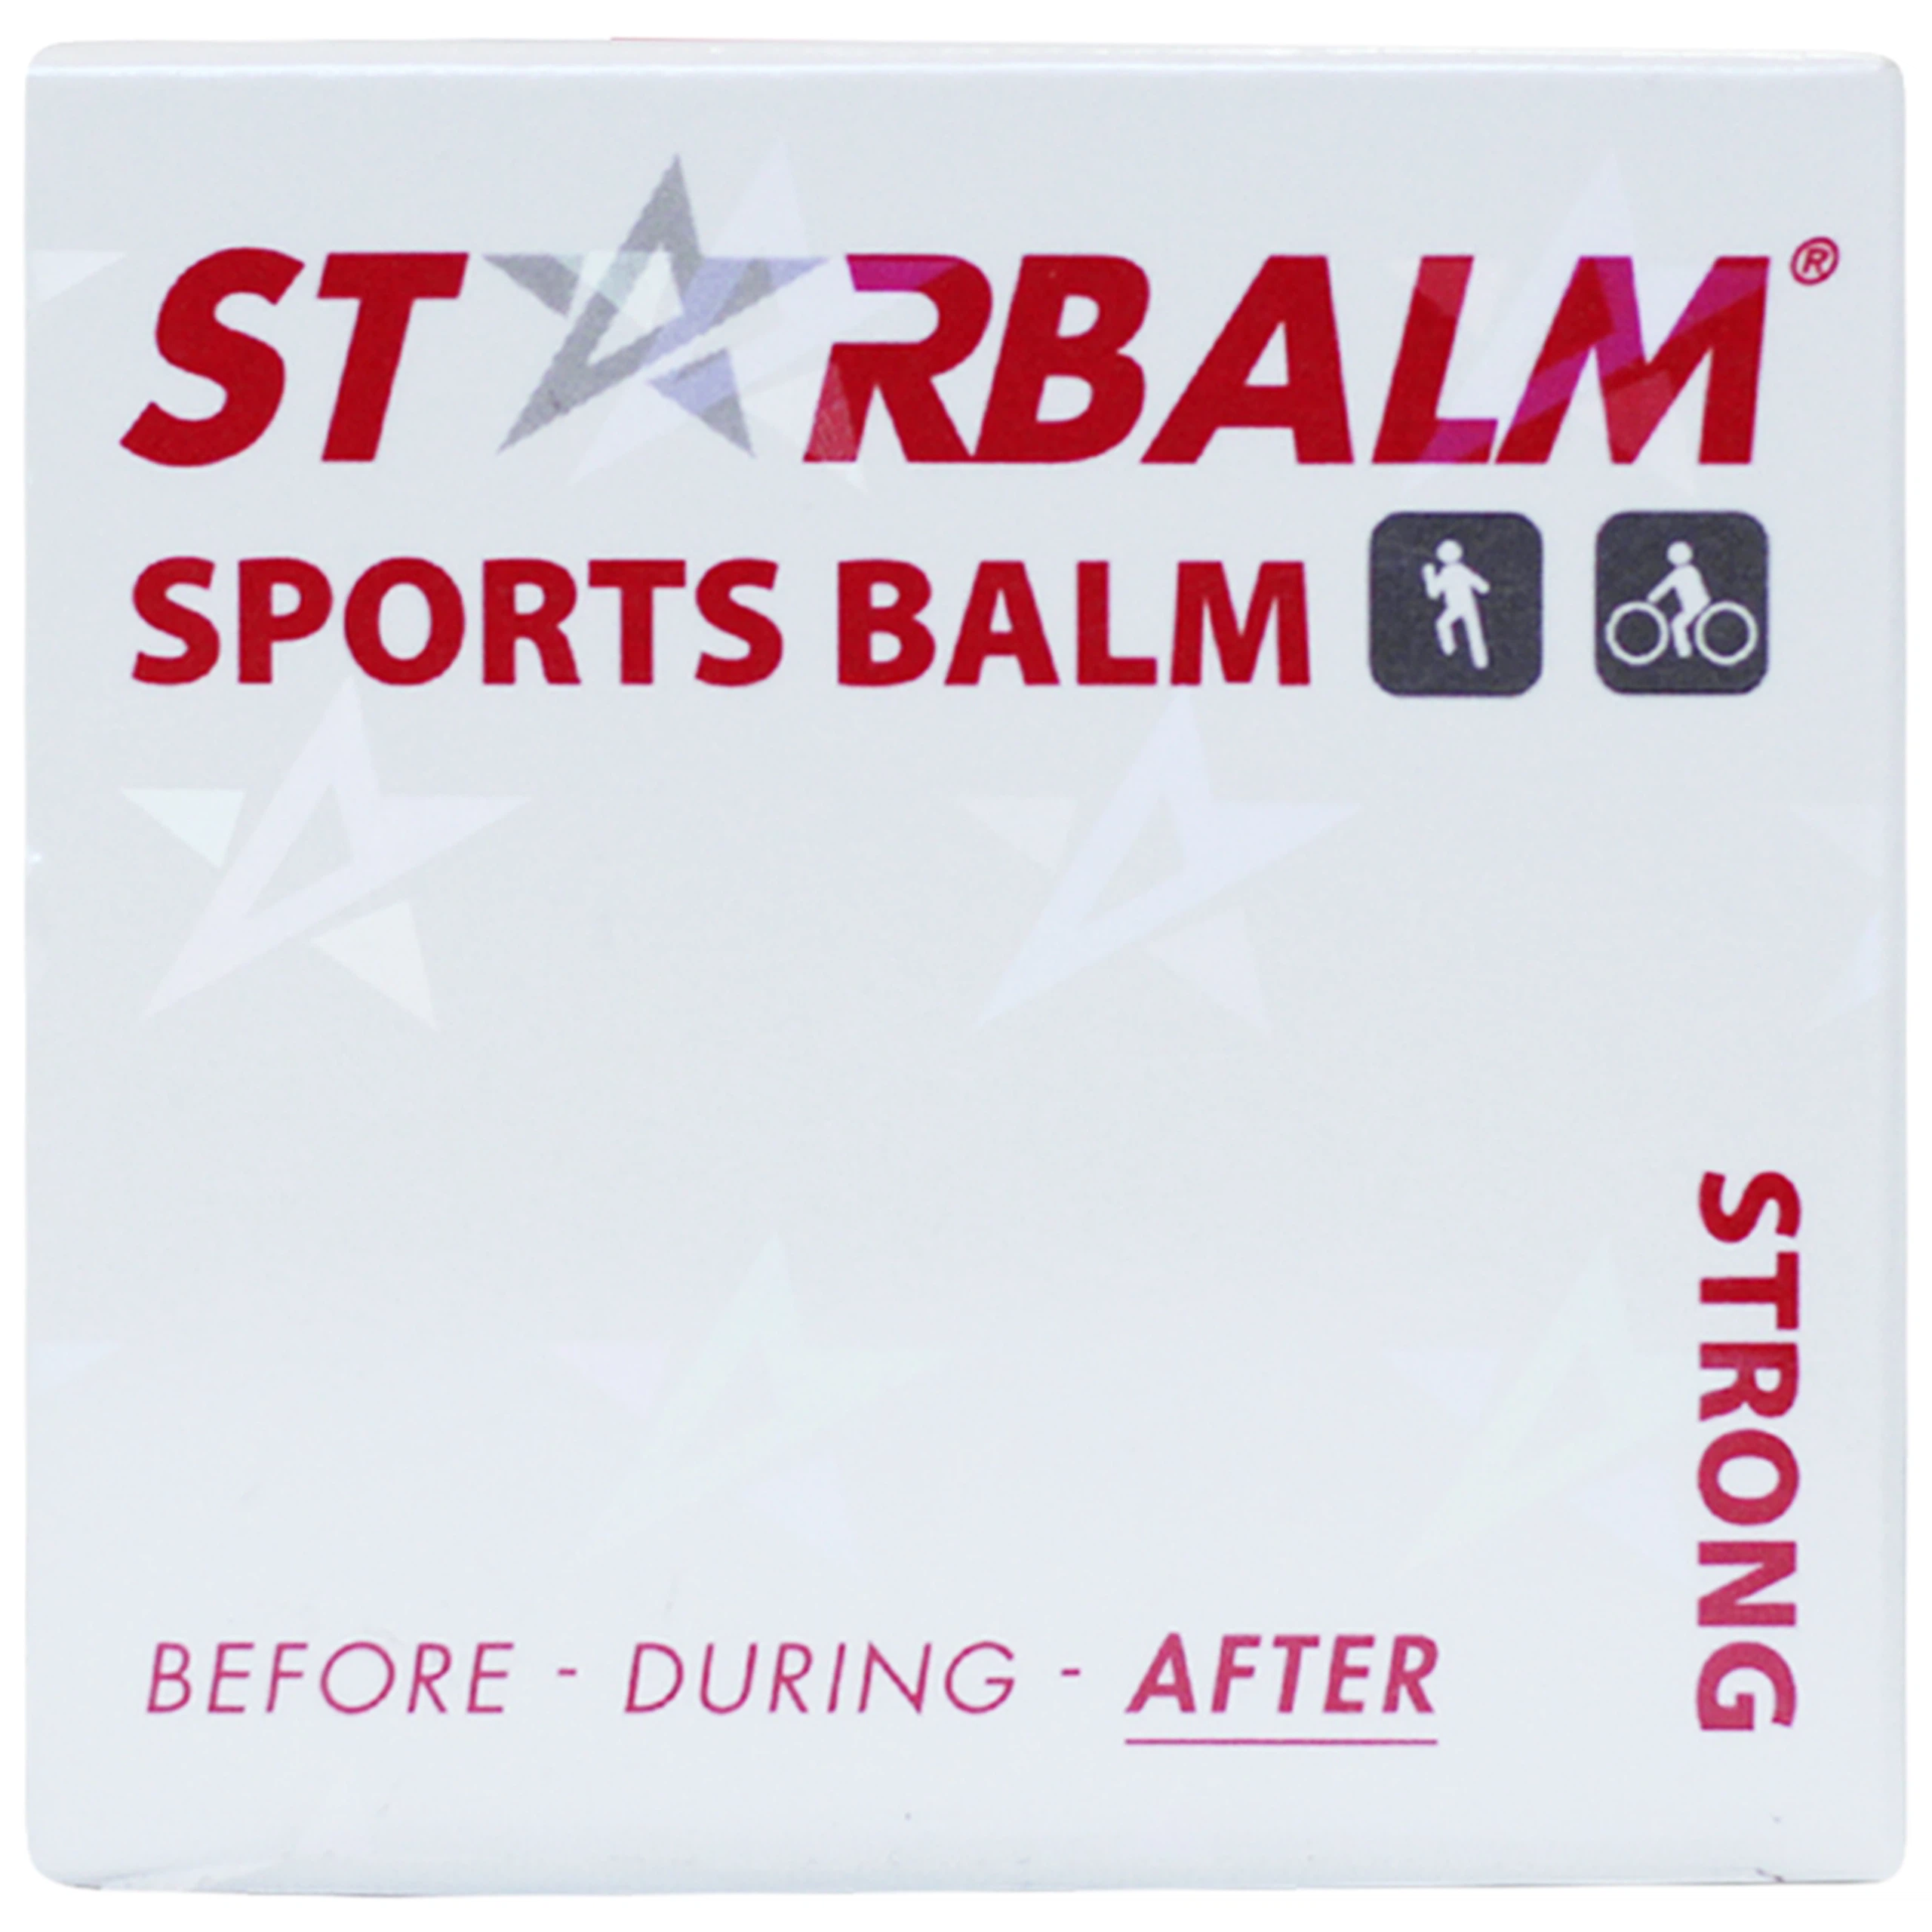 Cao Starbalm Sports Balm trắng làm ấm cơ, giúp cơ thư giãn sau khi vận động dành cho da nhạy cảm (10g)